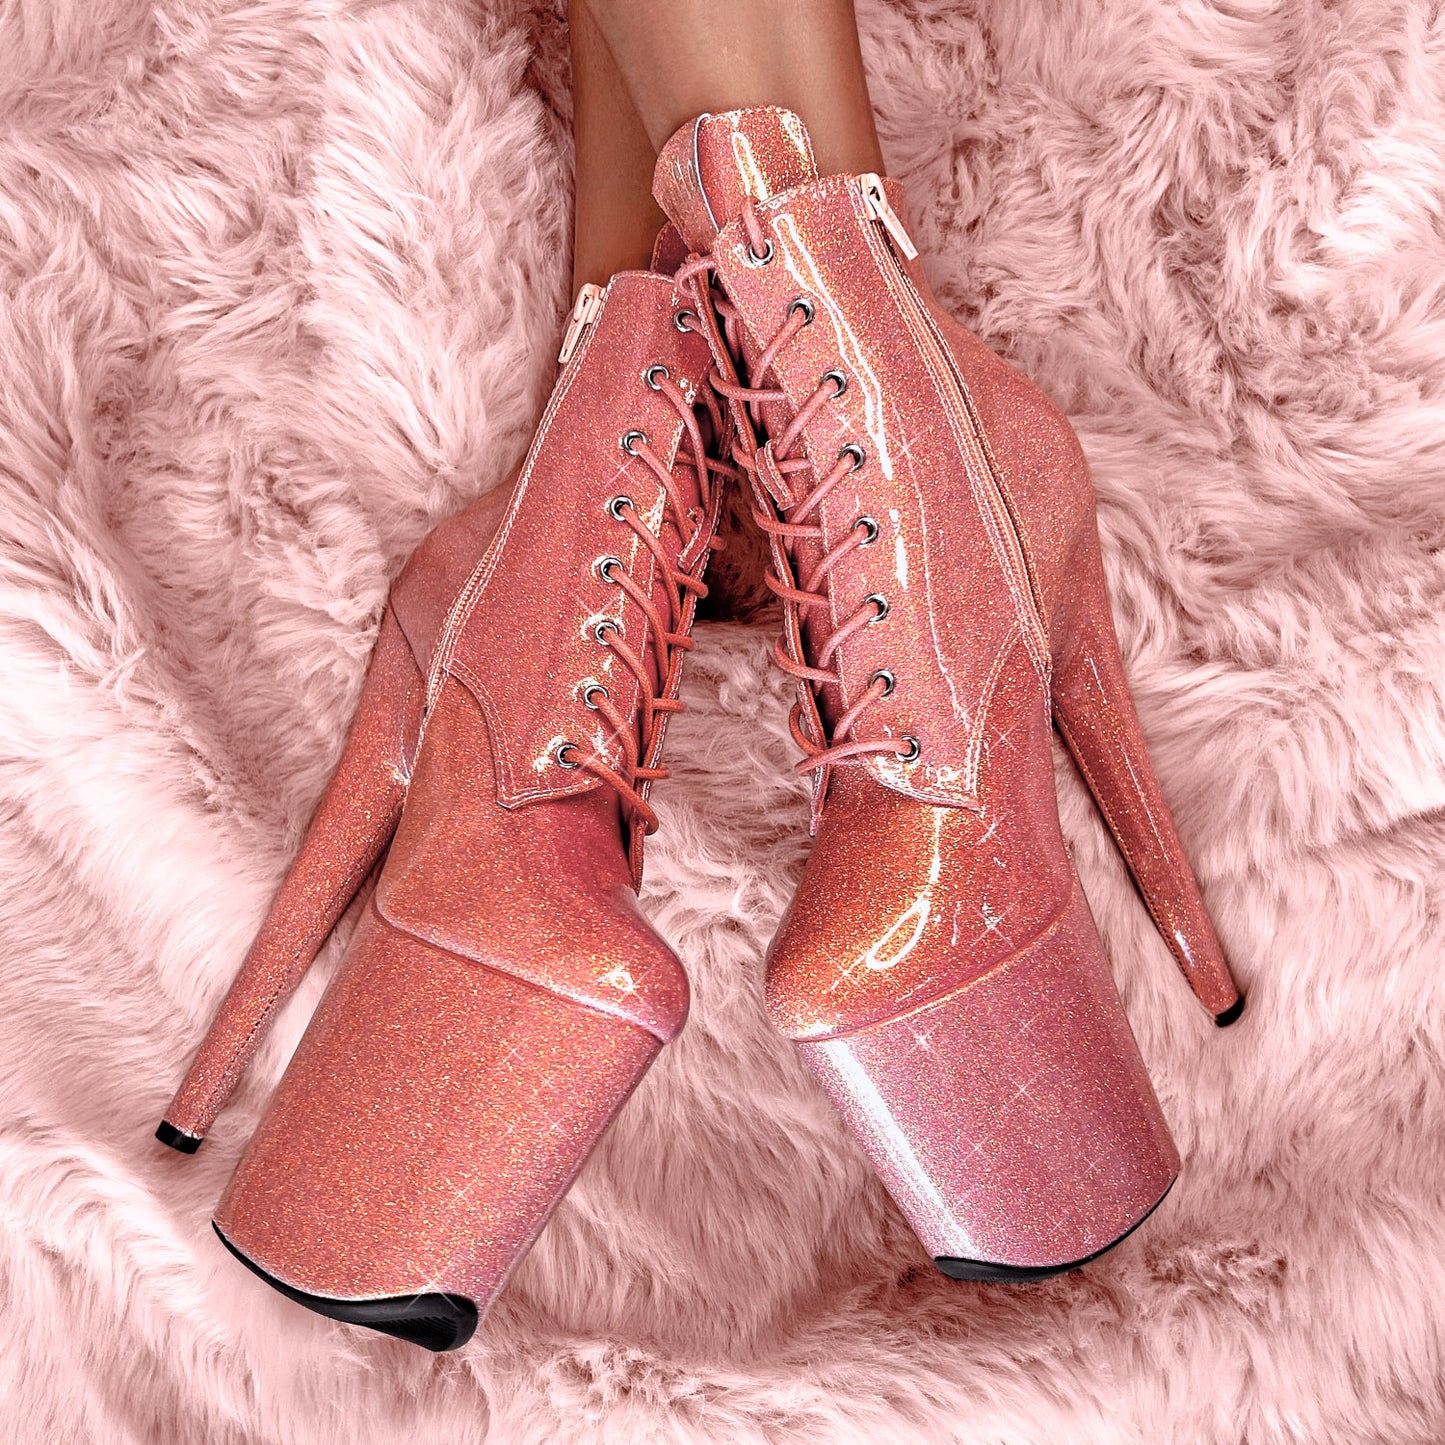 The Glitterati Ankle Boot - Feelin' Peachy - 8 INCH, stripper shoe, stripper heel, pole heel, not a pleaser, platform, dancer, pole dance, floor work